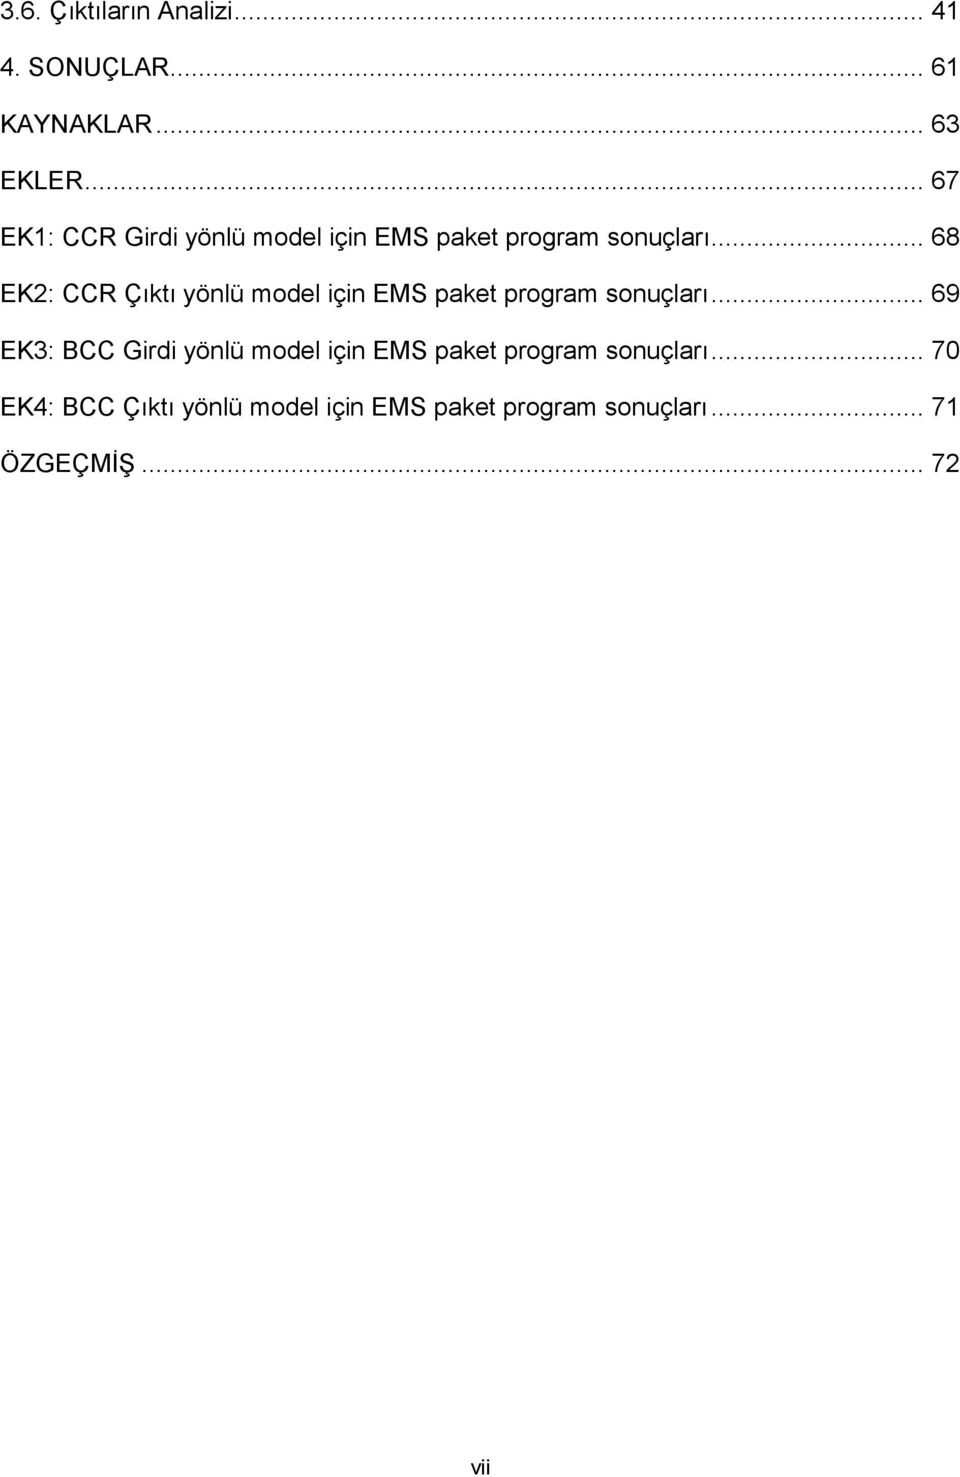 .. 68 EK2: CCR Çıktı yönlü model için EMS paket program sonuçları.